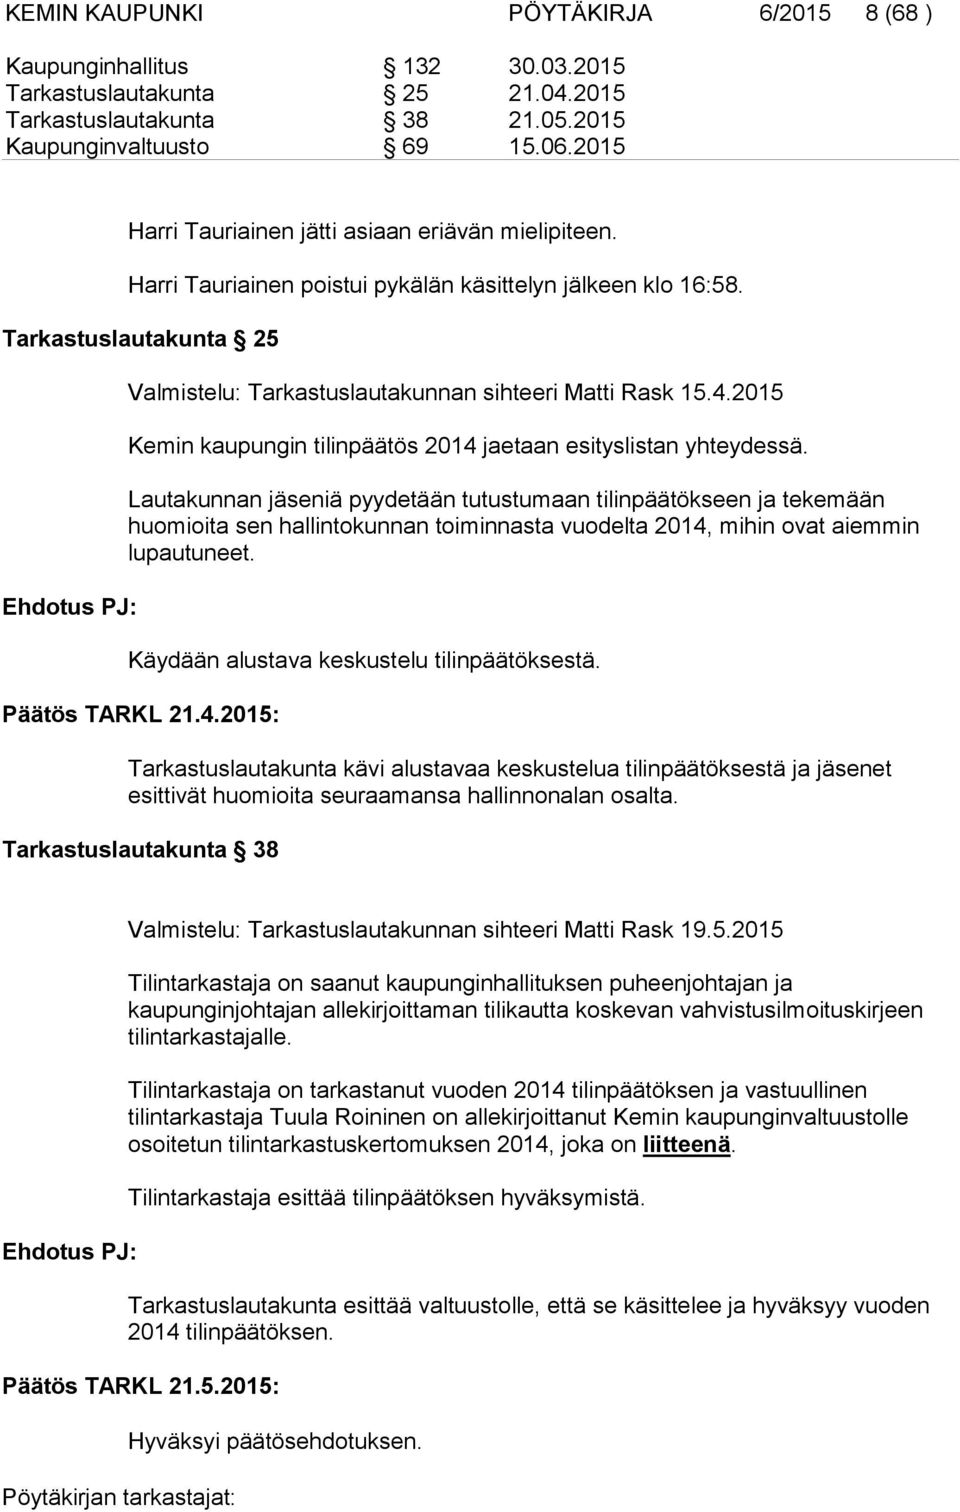 Tarkastuslautakunta 25 Ehdotus PJ: Valmistelu: Tarkastuslautakunnan sihteeri Matti Rask 15.4.2015 Kemin kaupungin tilinpäätös 2014 jaetaan esityslistan yhteydessä.